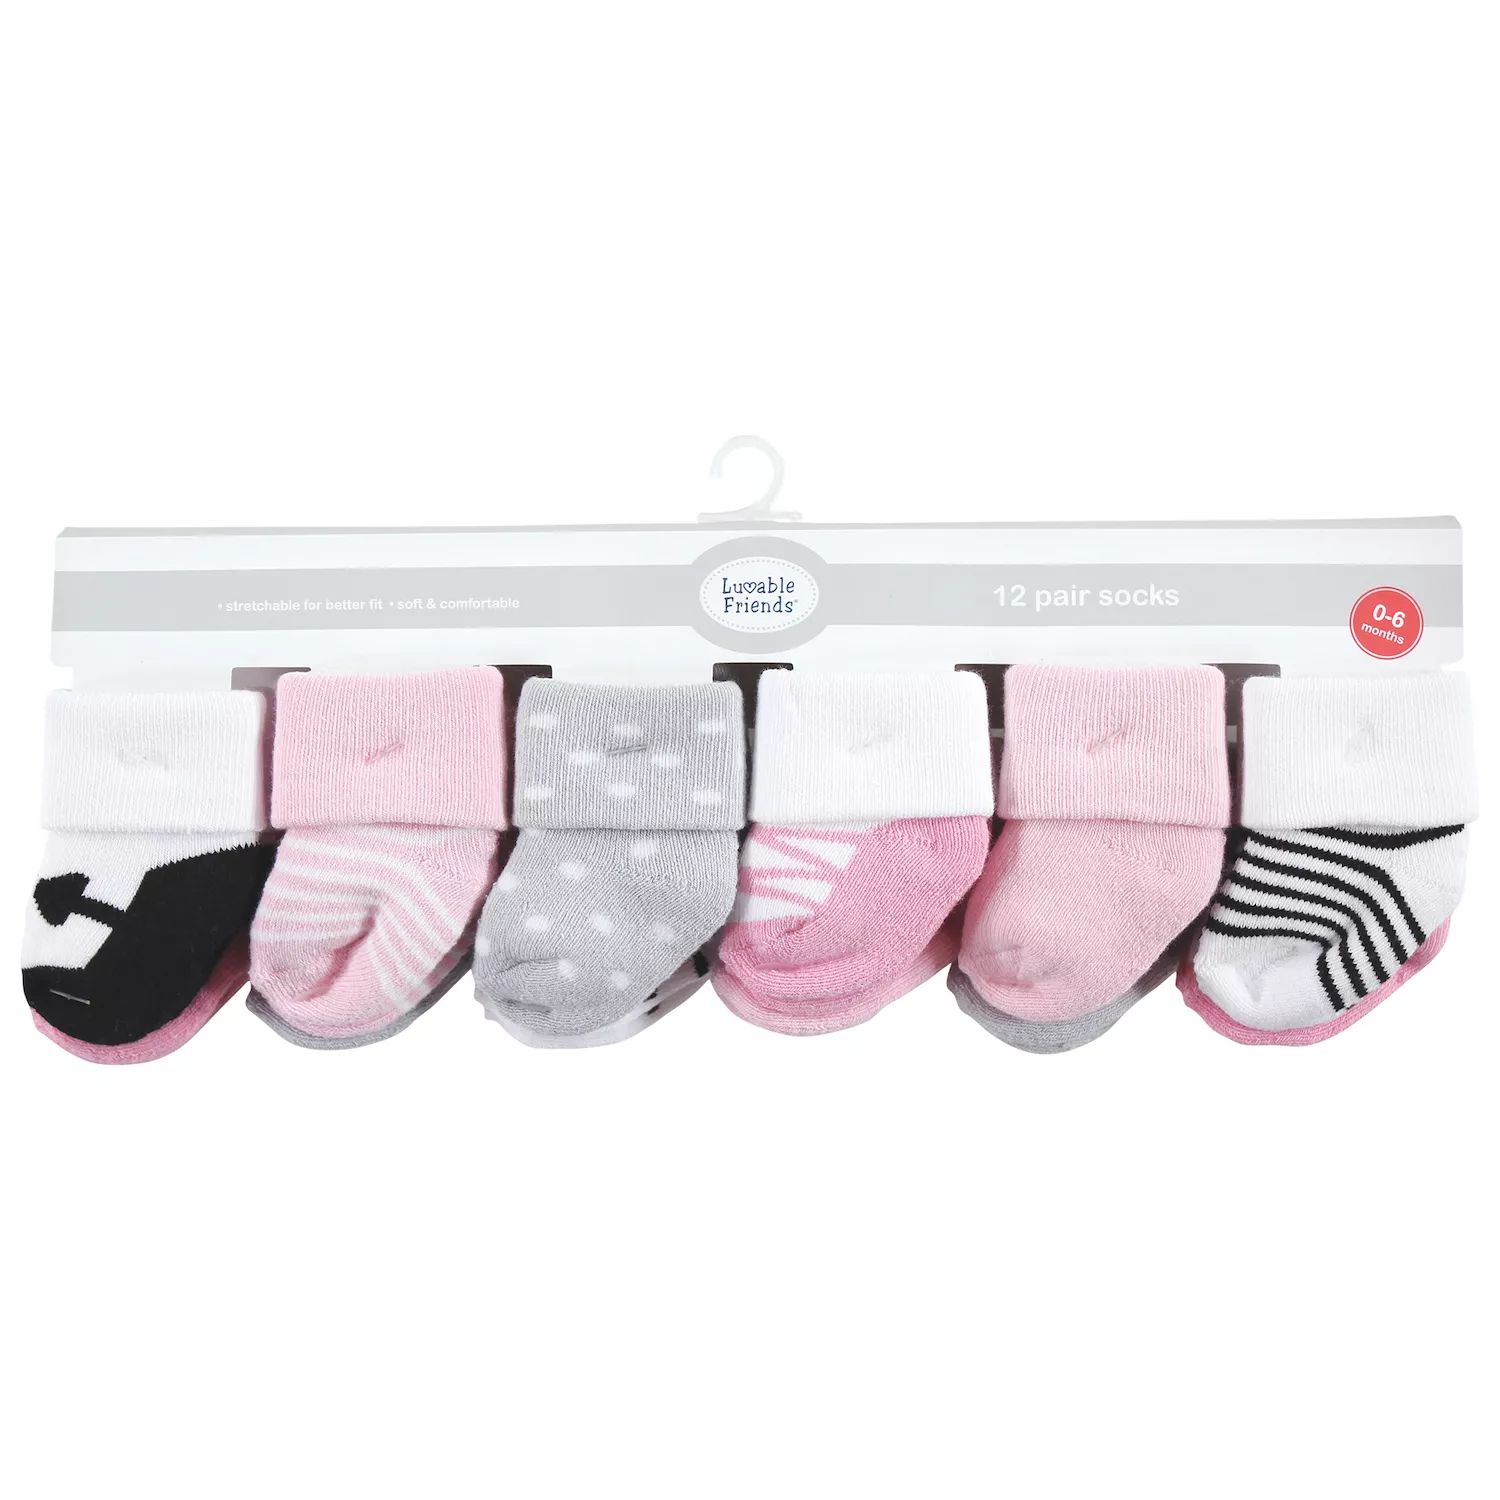 Махровые носки Luvable Friends для новорожденных и малышей, розовый, черный, балетки, 12 шт. Luvable Friends